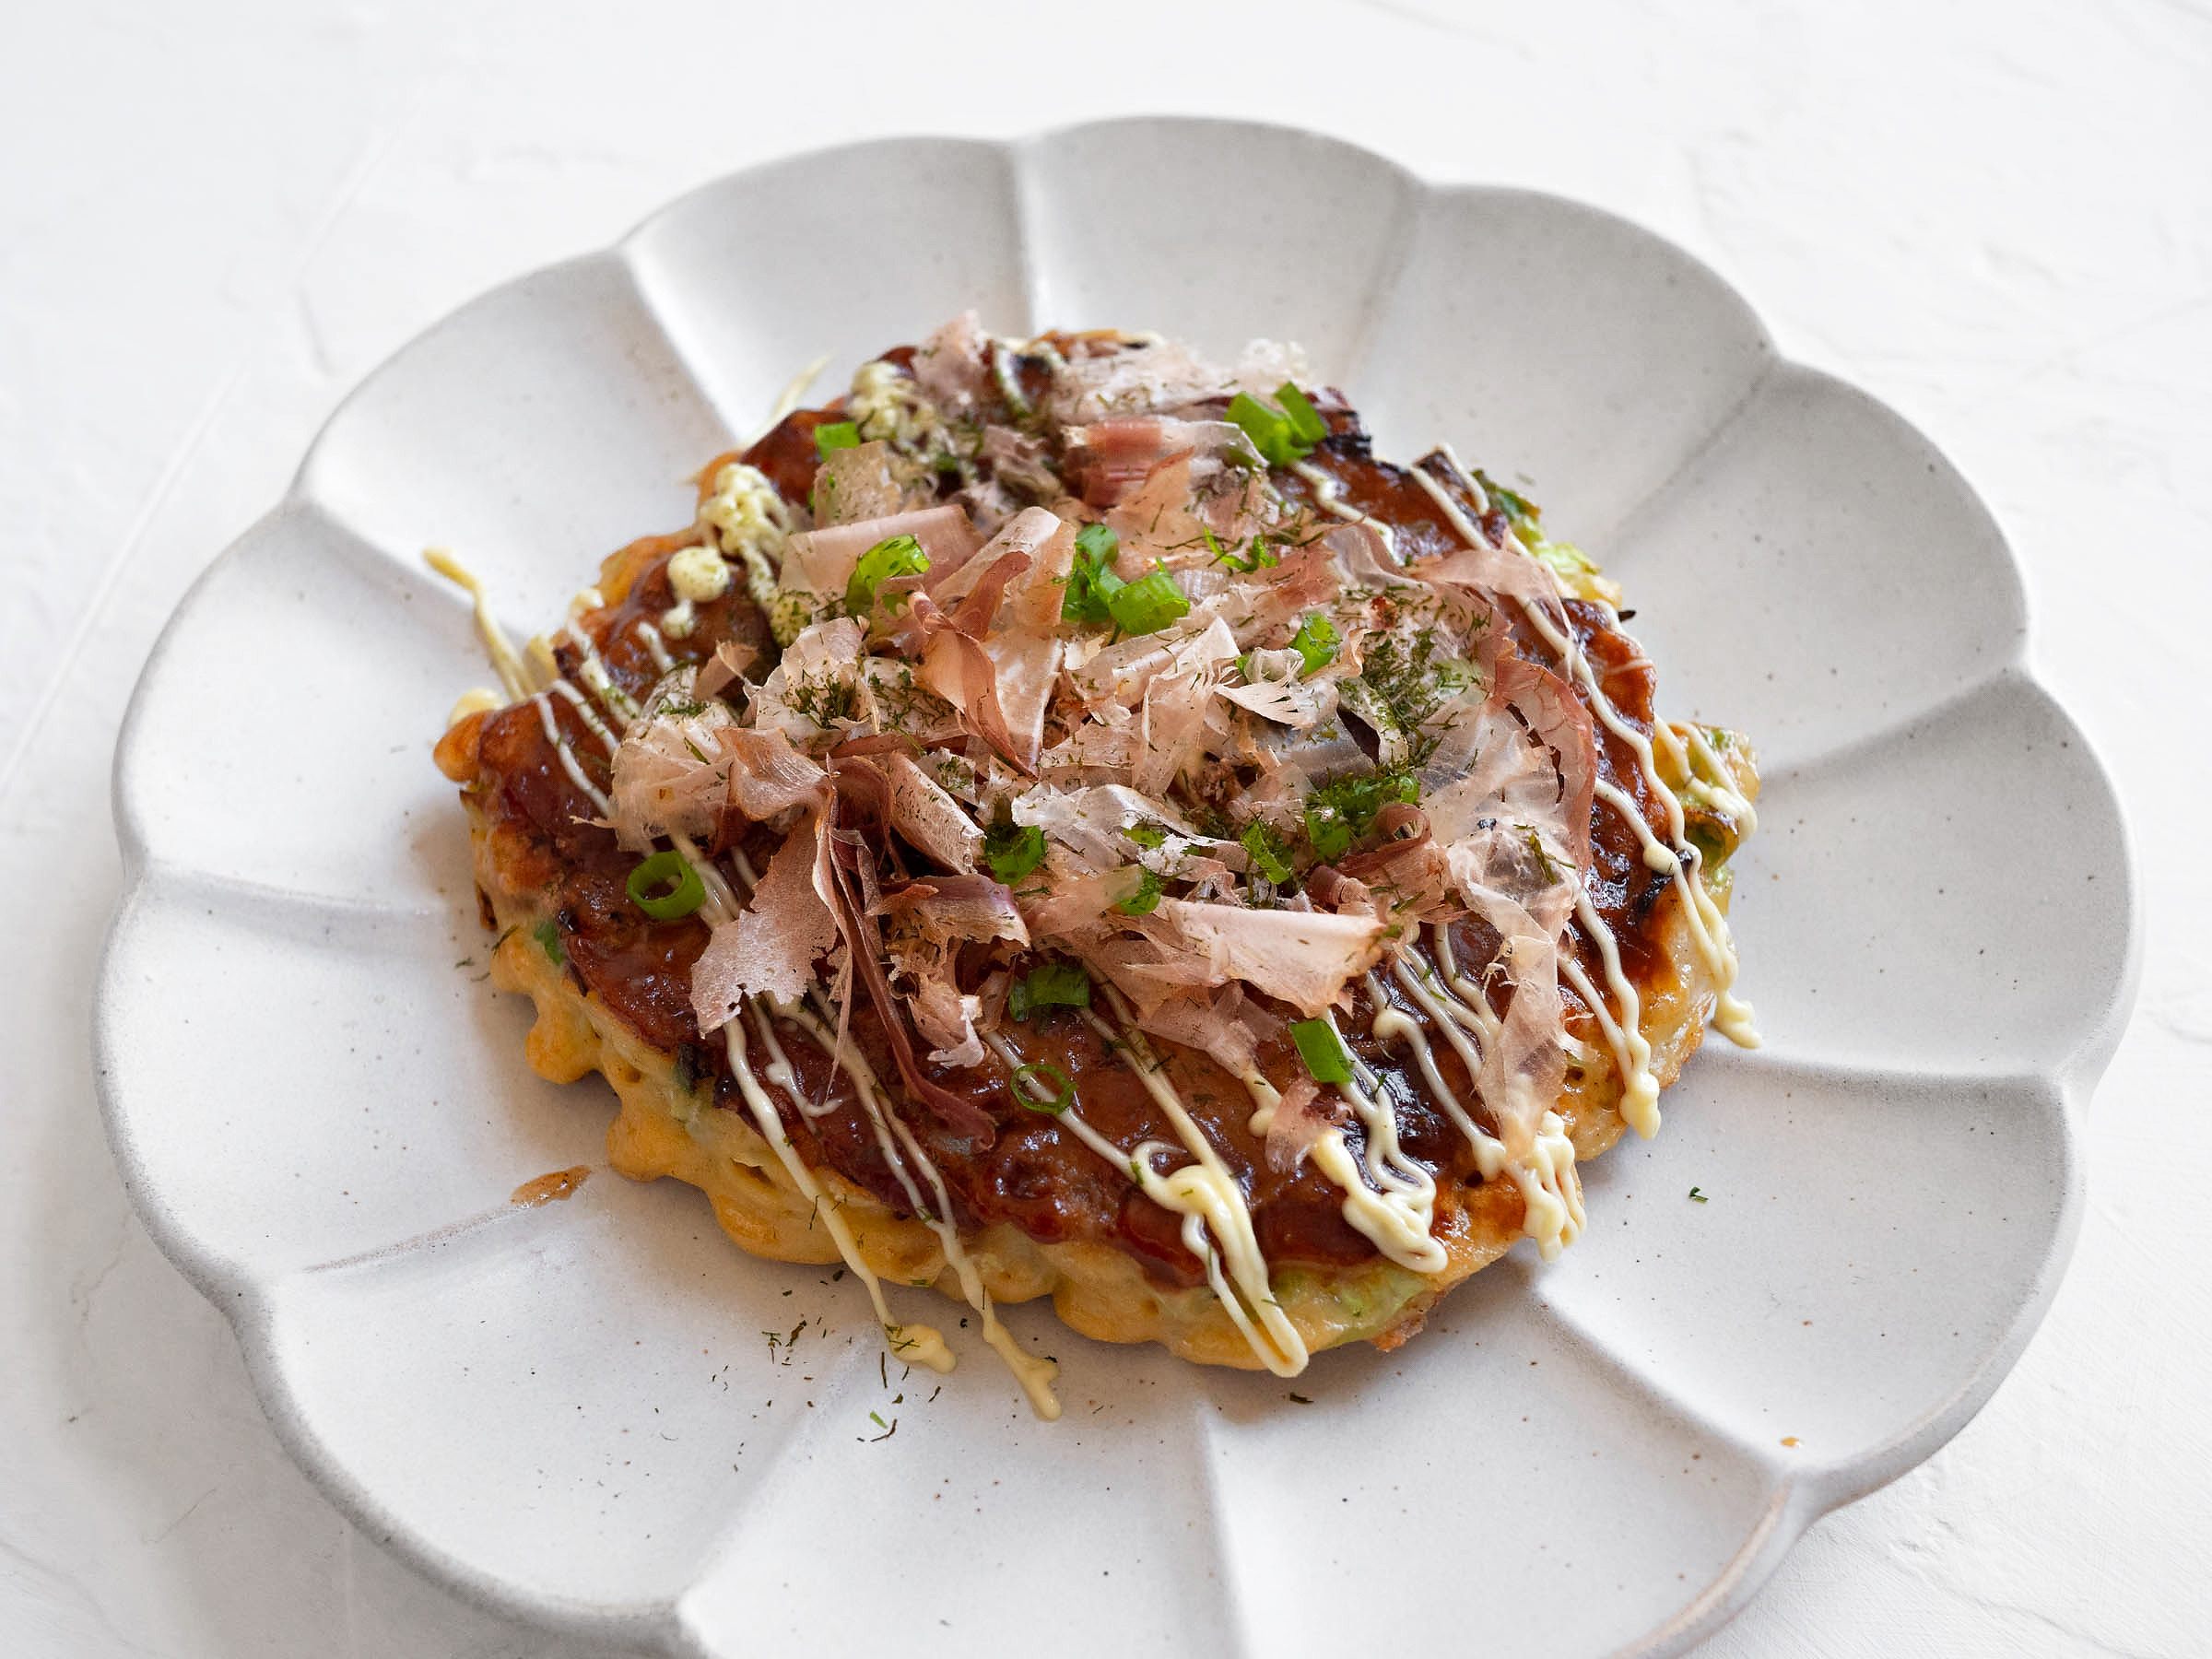 https://sylviawakana.com/wp-content/uploads/2021/11/Okonomiyaki-2.jpg